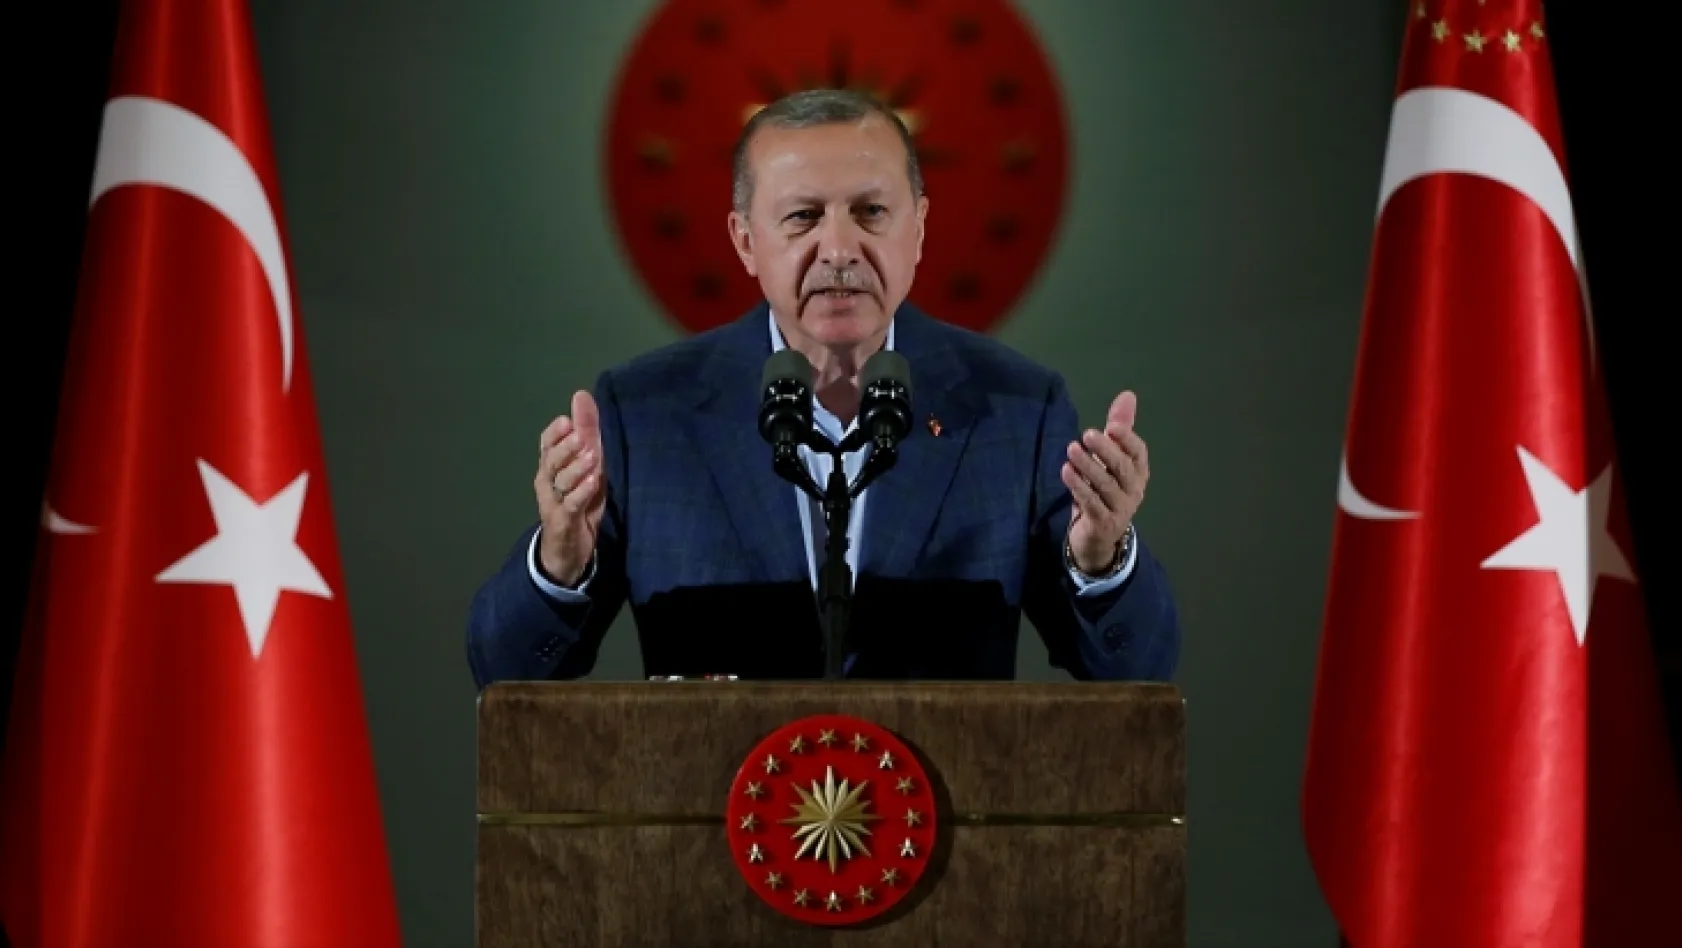 Cumhurbaşkanı Erdoğan son anketi açıkladı